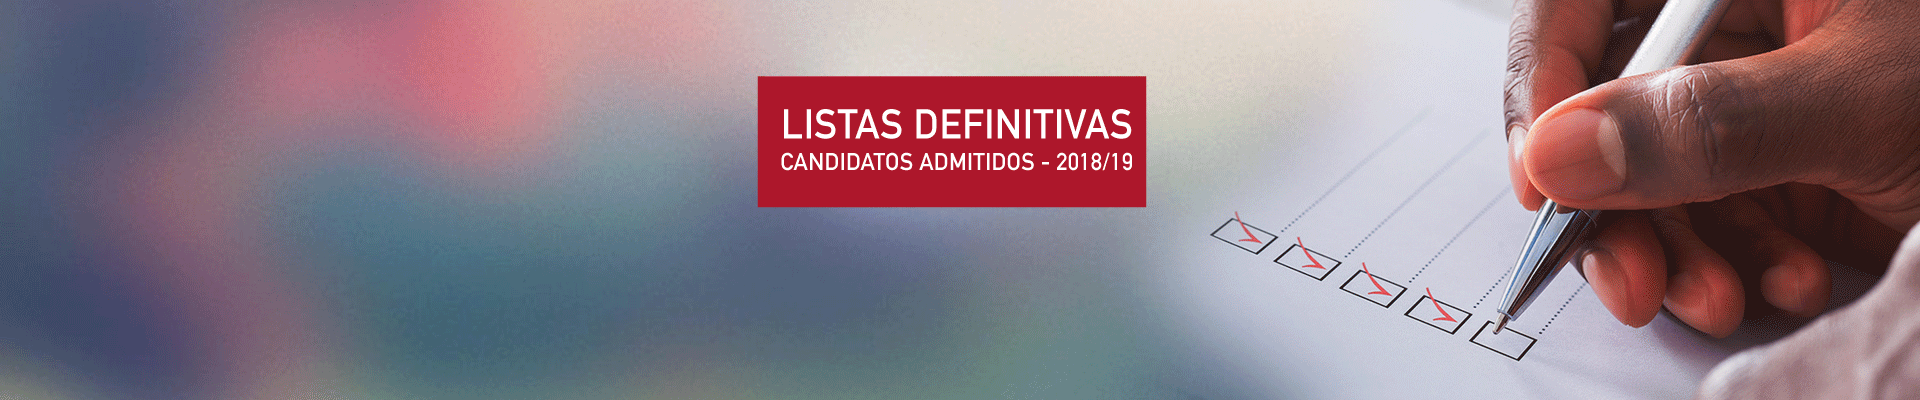 lista-dos-candidatos-admitidos-20182019.gif